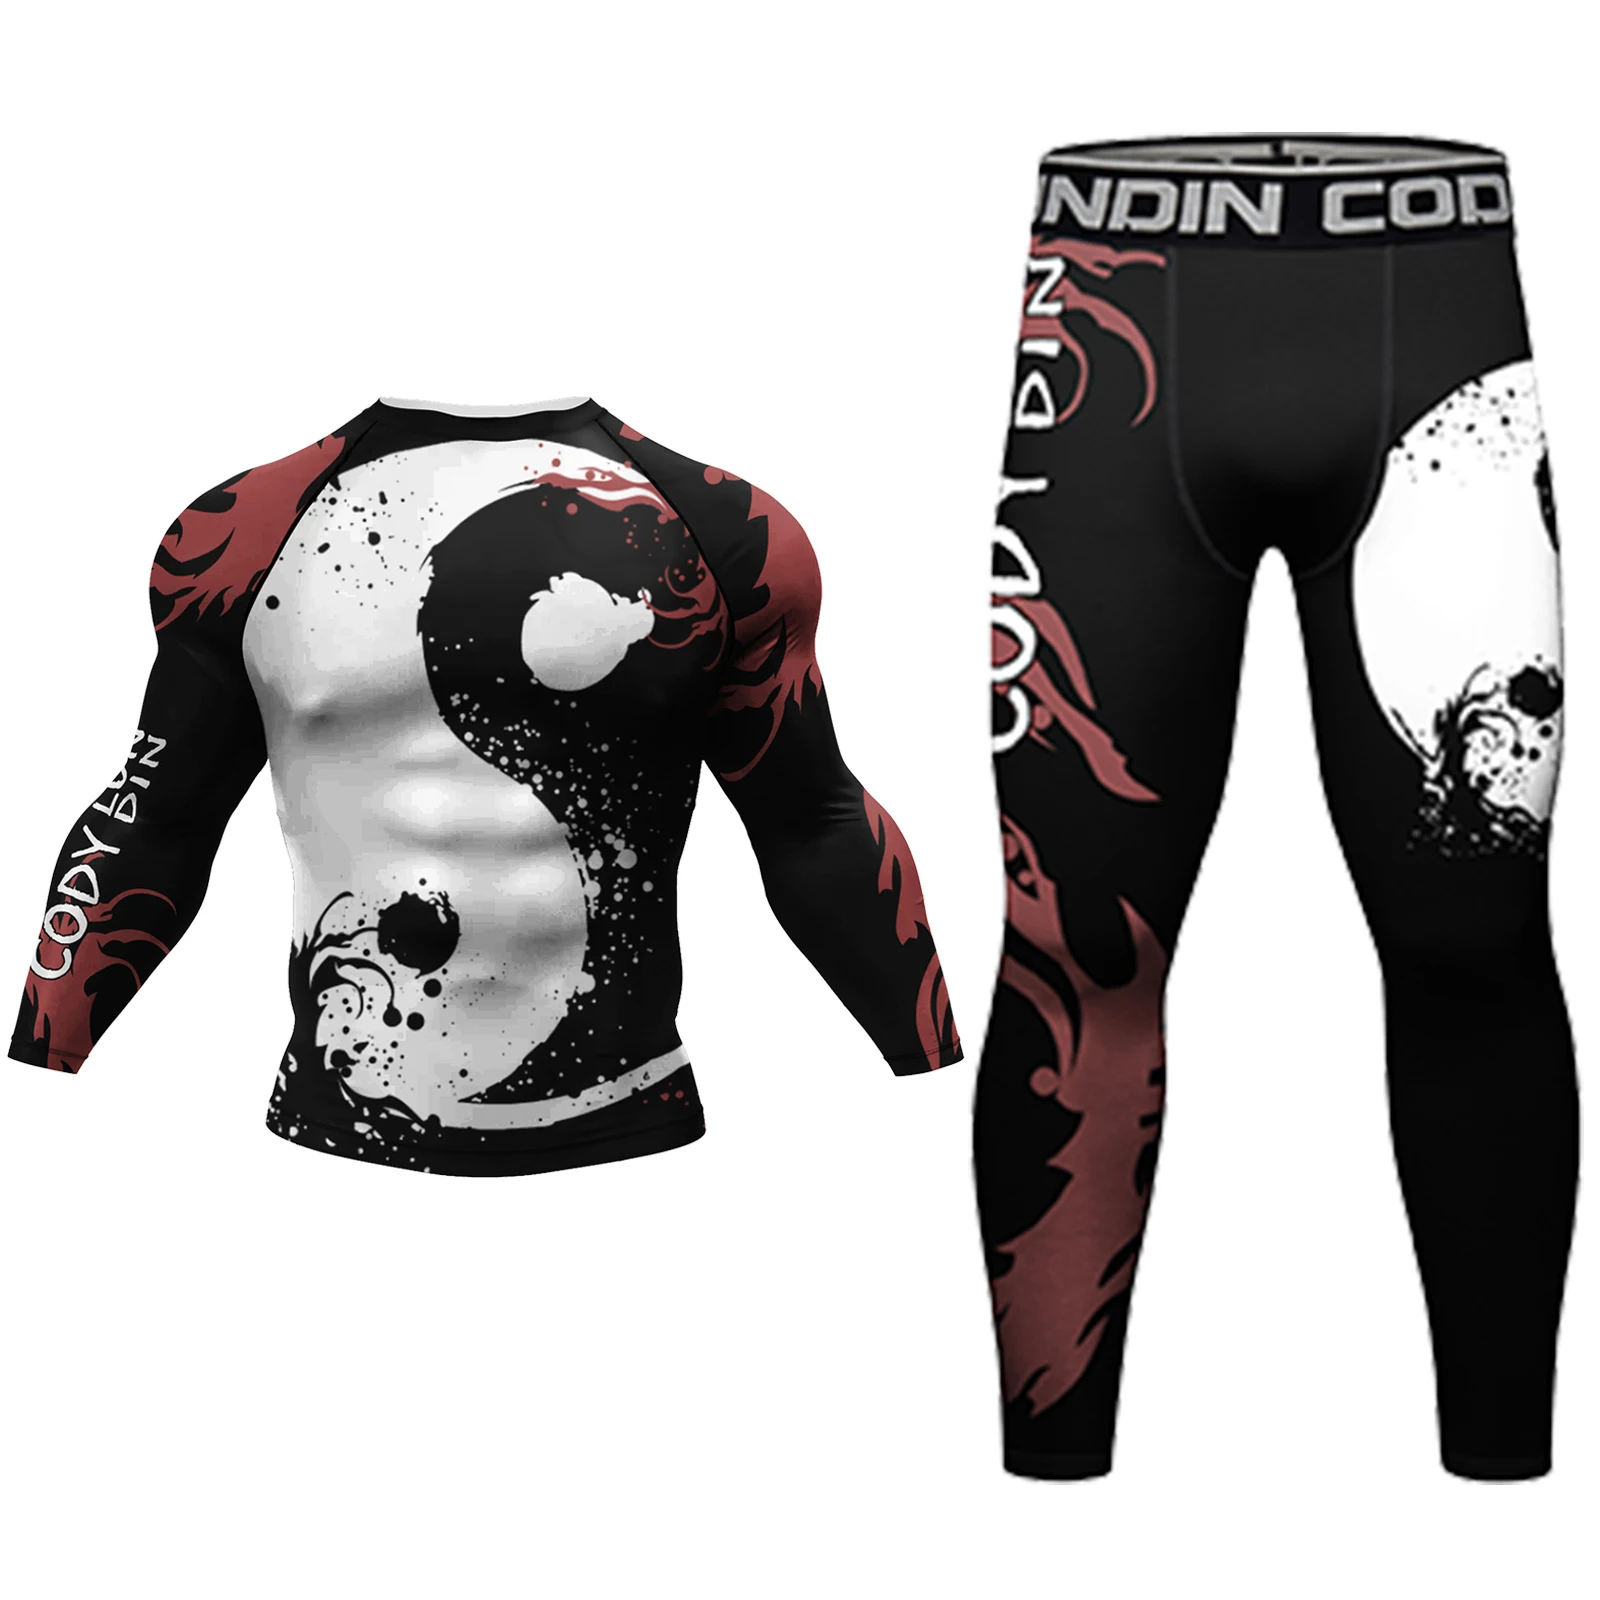 

Cody Lundin одежда для боевого искусства в китайском стиле 2 шт. Jiu jitsu gi bjj Rashguard мужской компрессионный спортивный комплект спортивная одежда для тренажерного зала